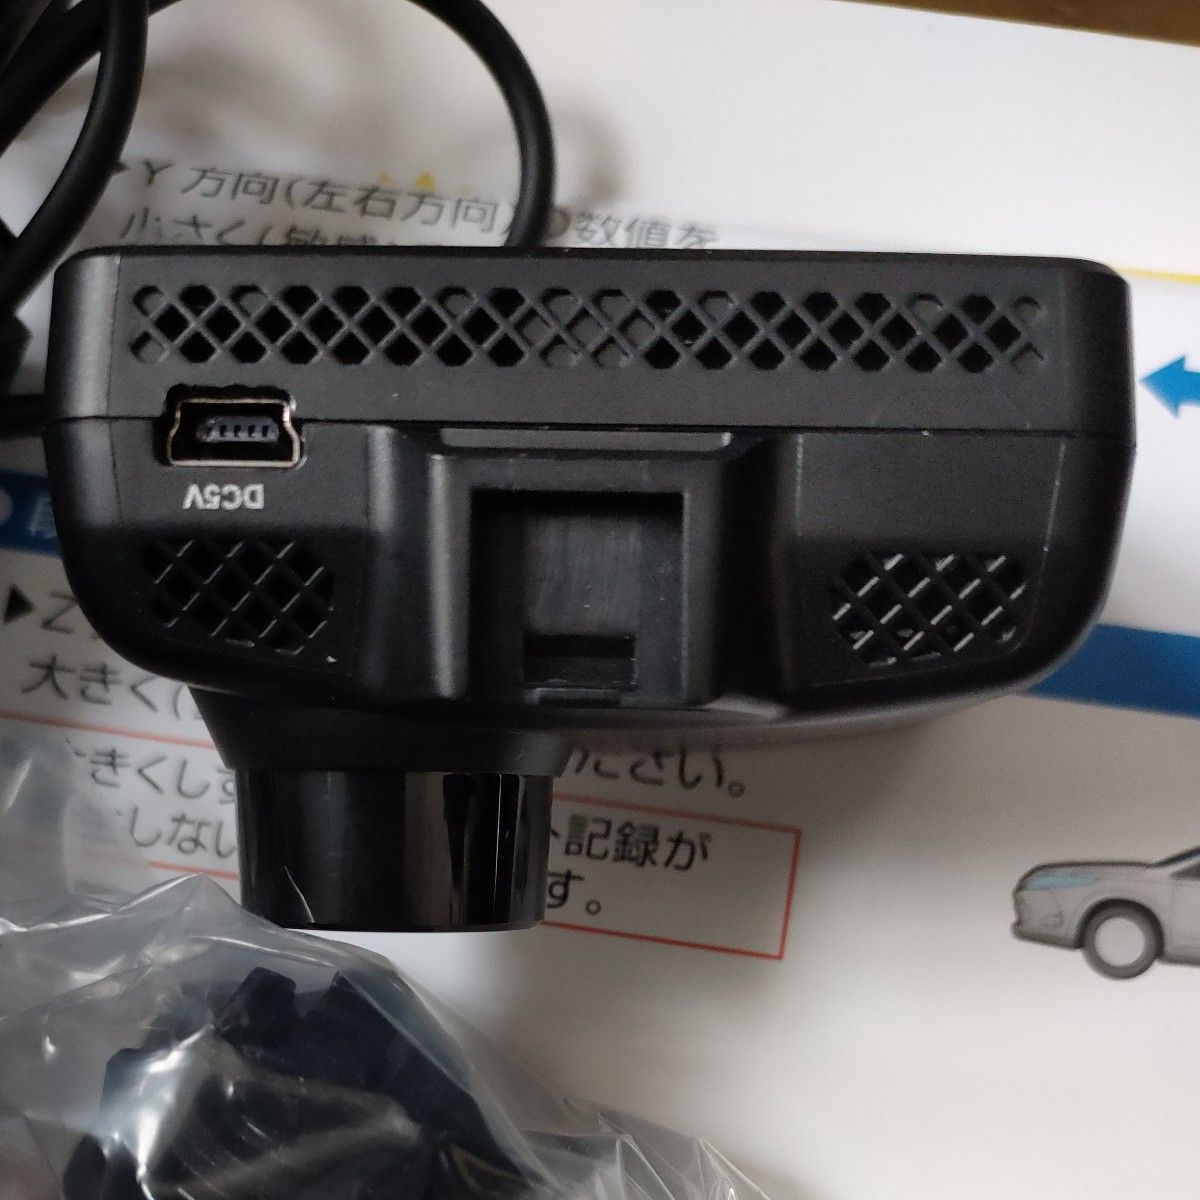 DRY-ST510P ドライブレコーダー ドラレコ   ユピテル  yupiteru